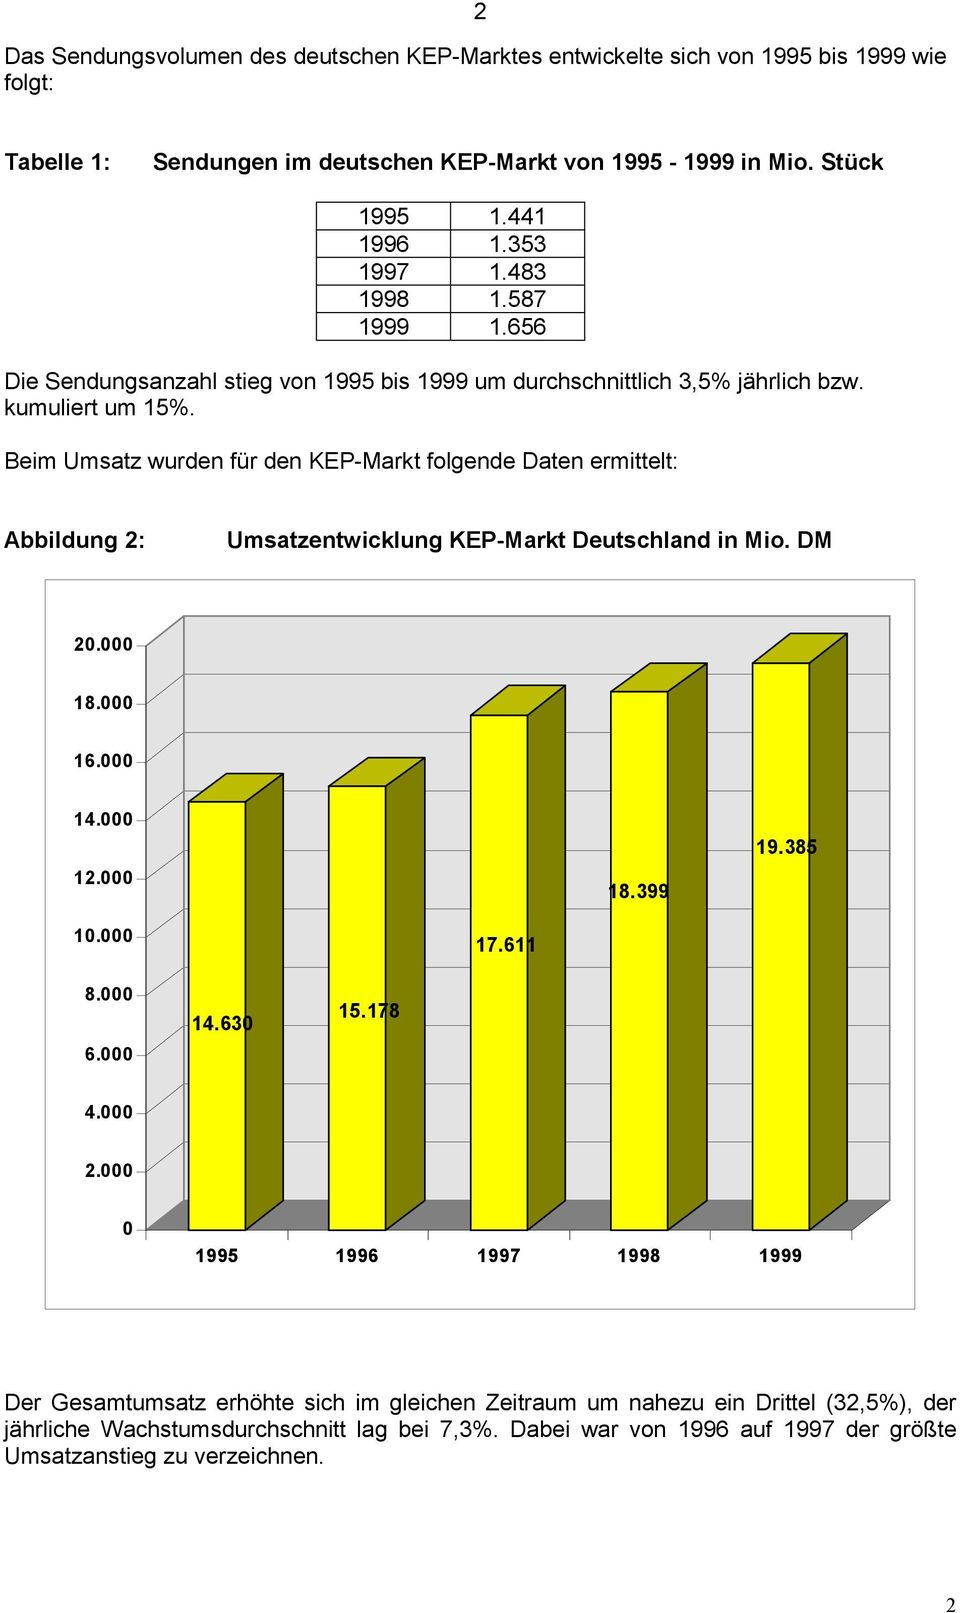 Beim Umsatz wurden für den KEP-Markt folgende Daten ermittelt: Abbildung 2: Umsatzentwicklung KEP-Markt Deutschland in Mio. DM 20.000 18.000 16.000 14.000 12.000 18.399 19.385 10.000 17.611 8.